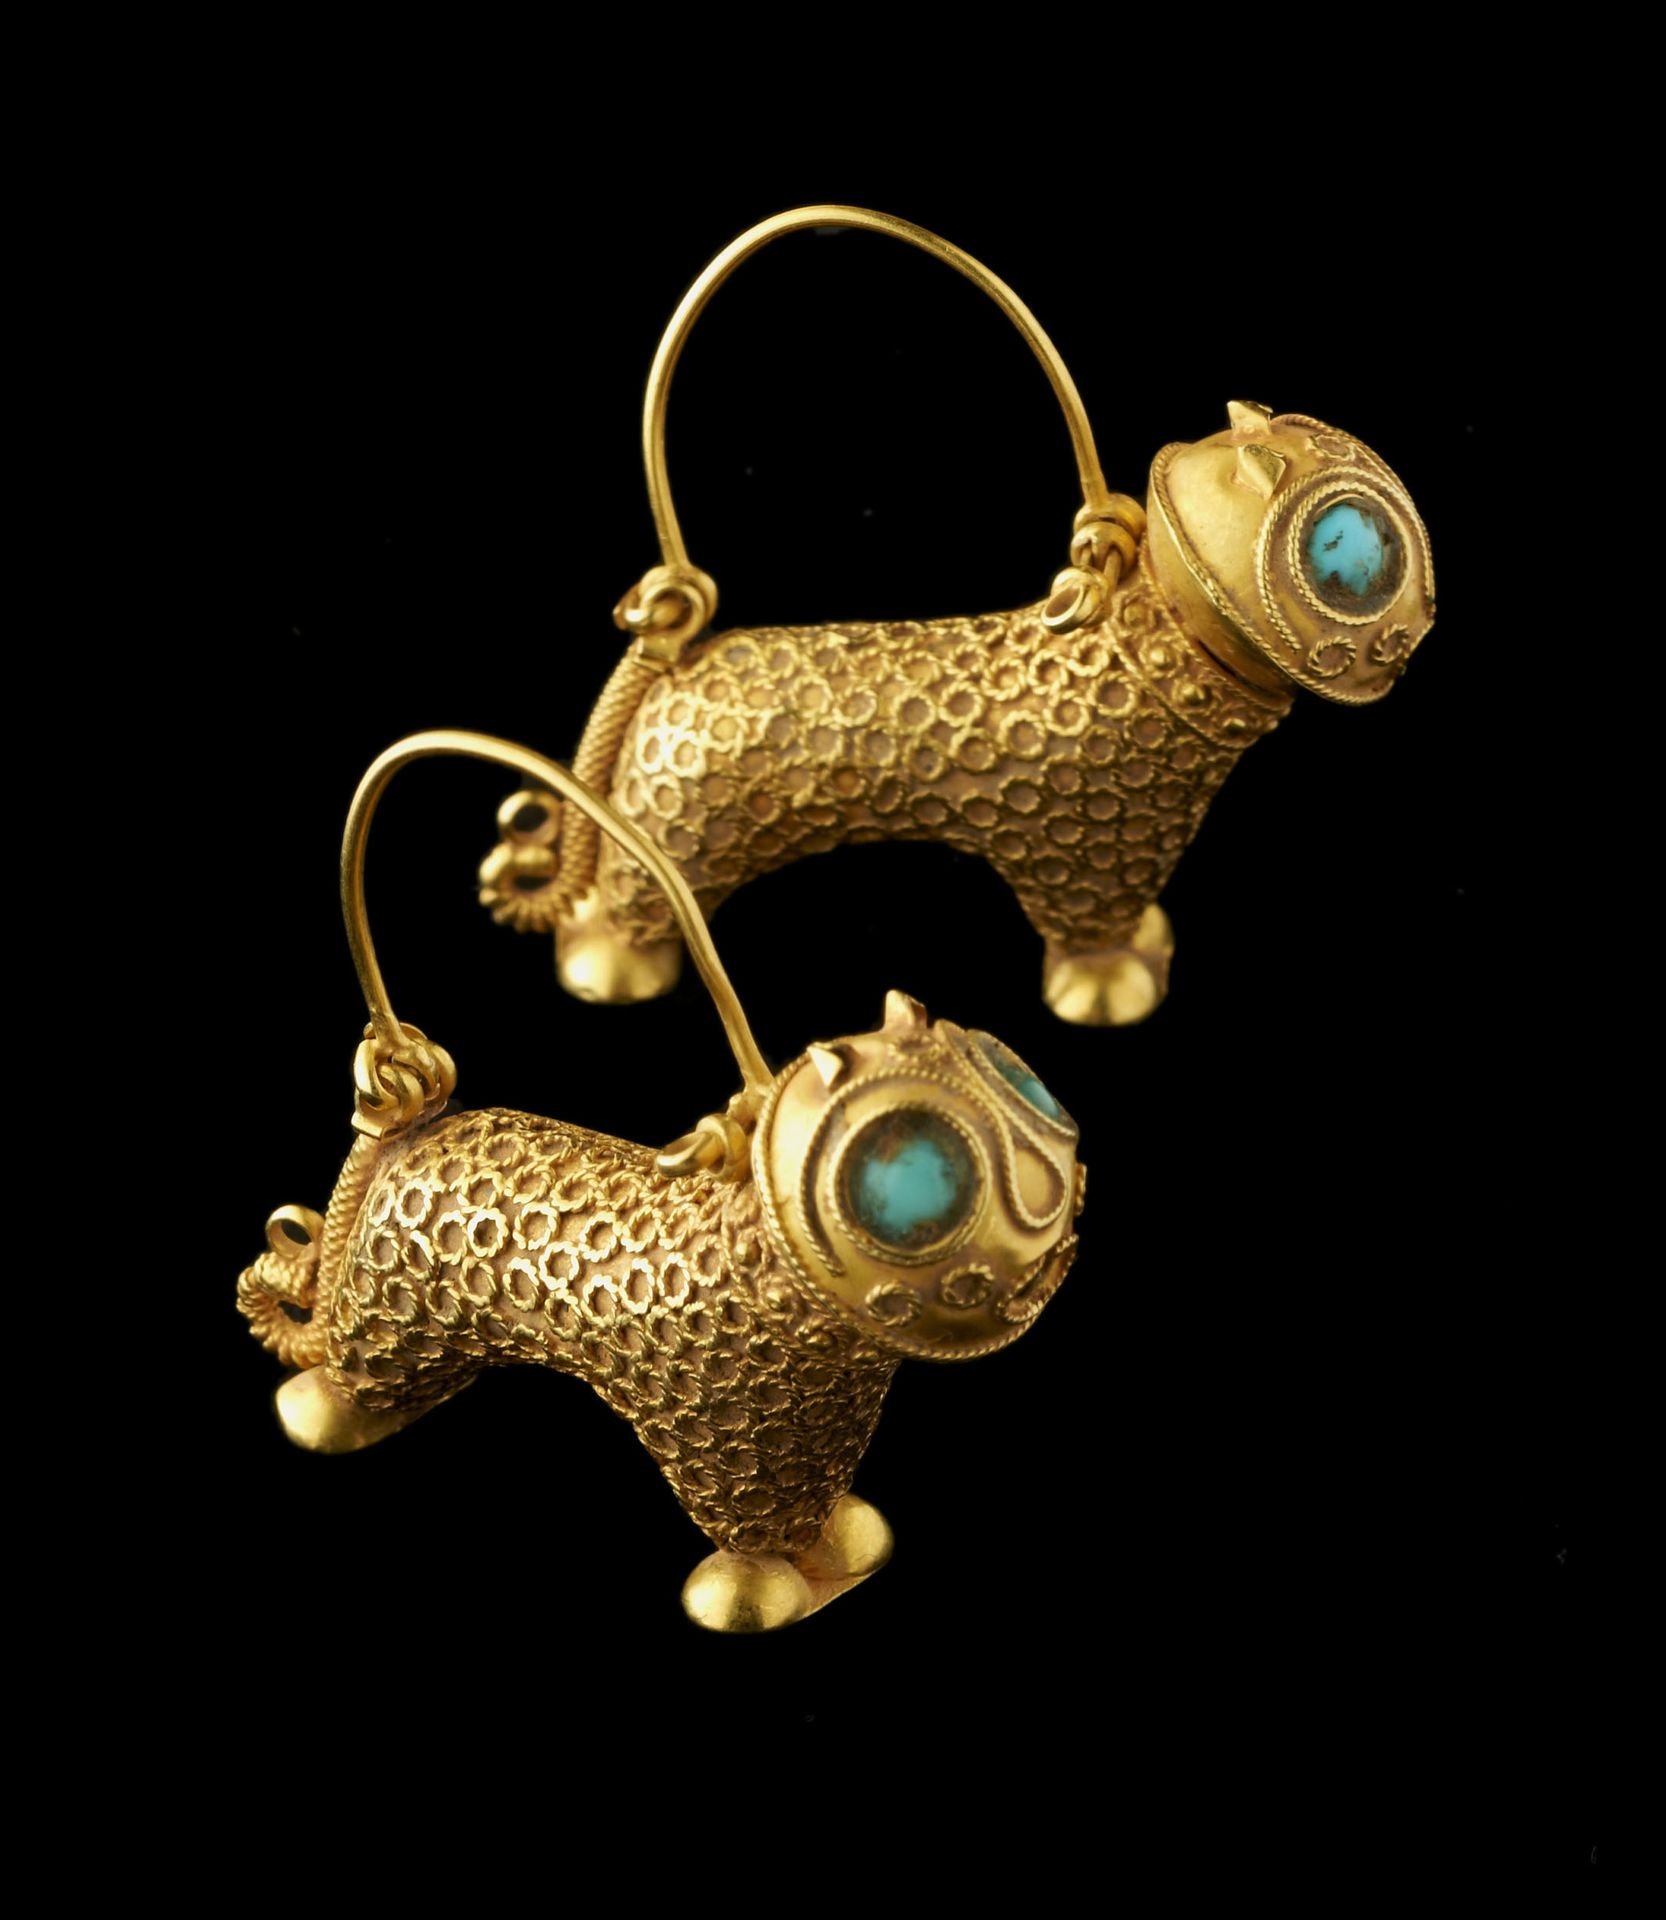 Null 耳环一对

缅甸，12世纪。

金狮子，眼睛镶嵌着绿松石。

长32毫米；重12克

一对缅甸金狮子形耳环。

镶嵌着绿松石的眼睛。约公元12世纪